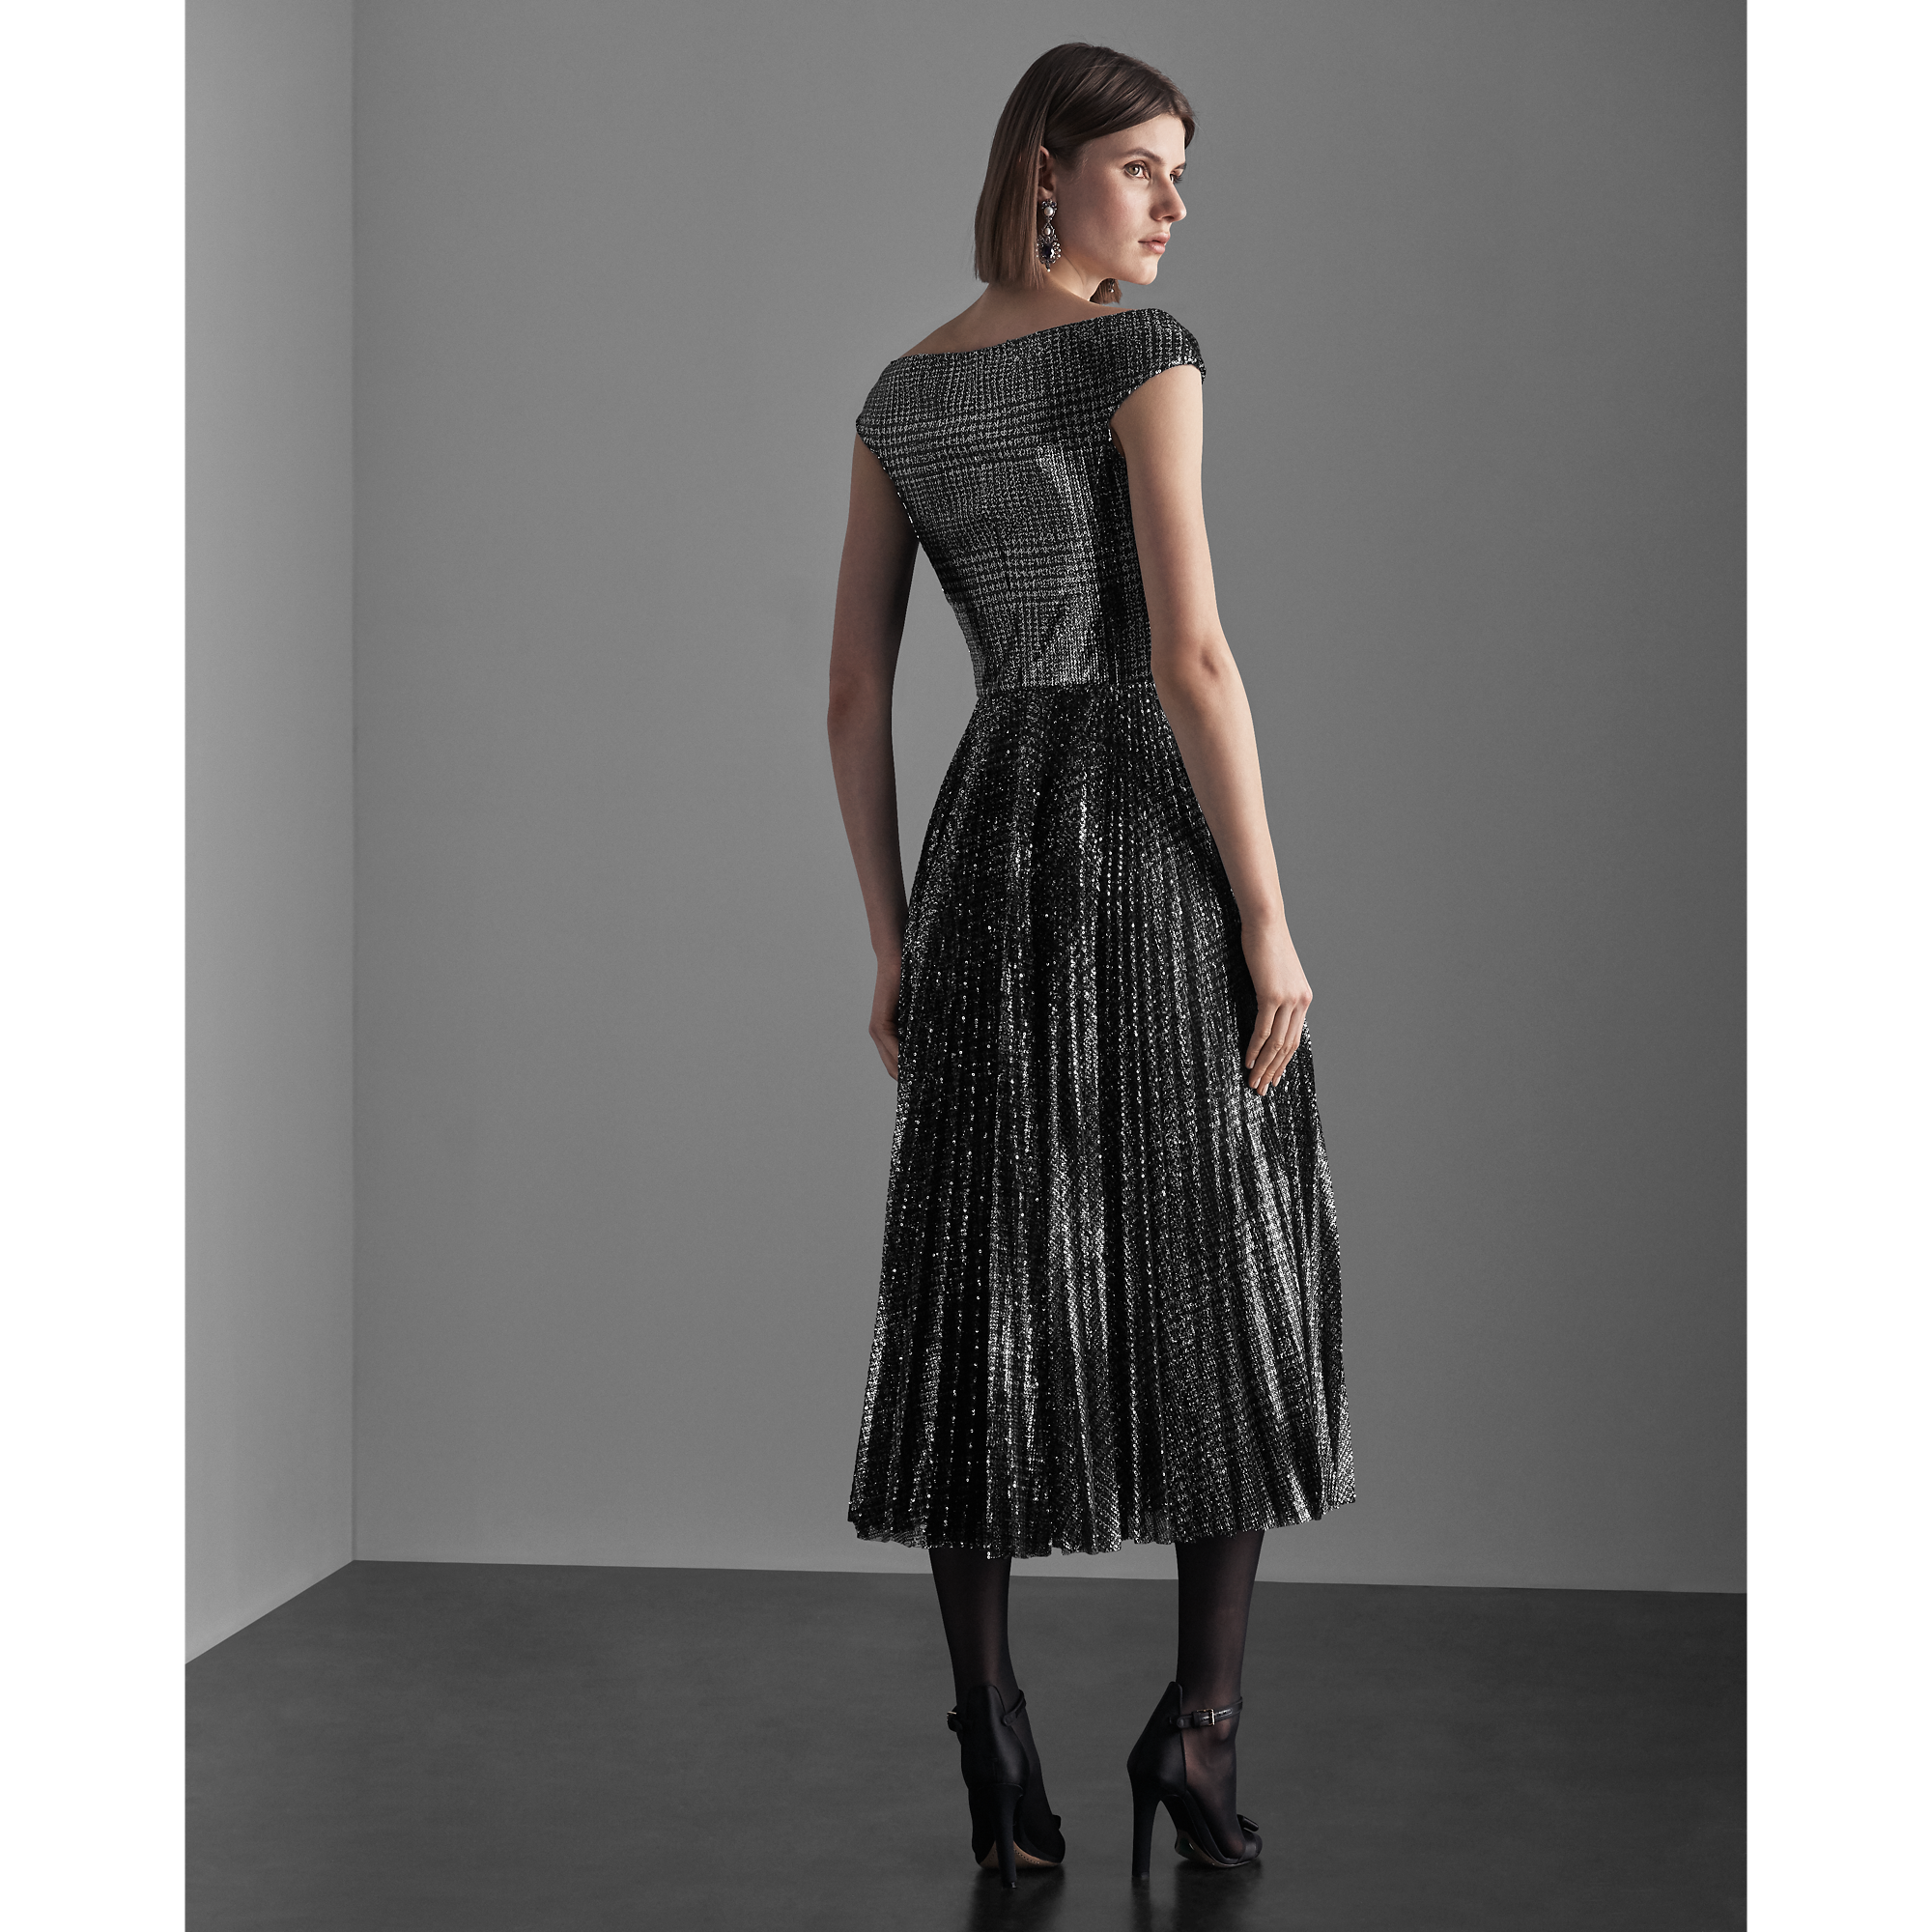 Ralph Lauren Fonda Sequined Plaid Dress. 5